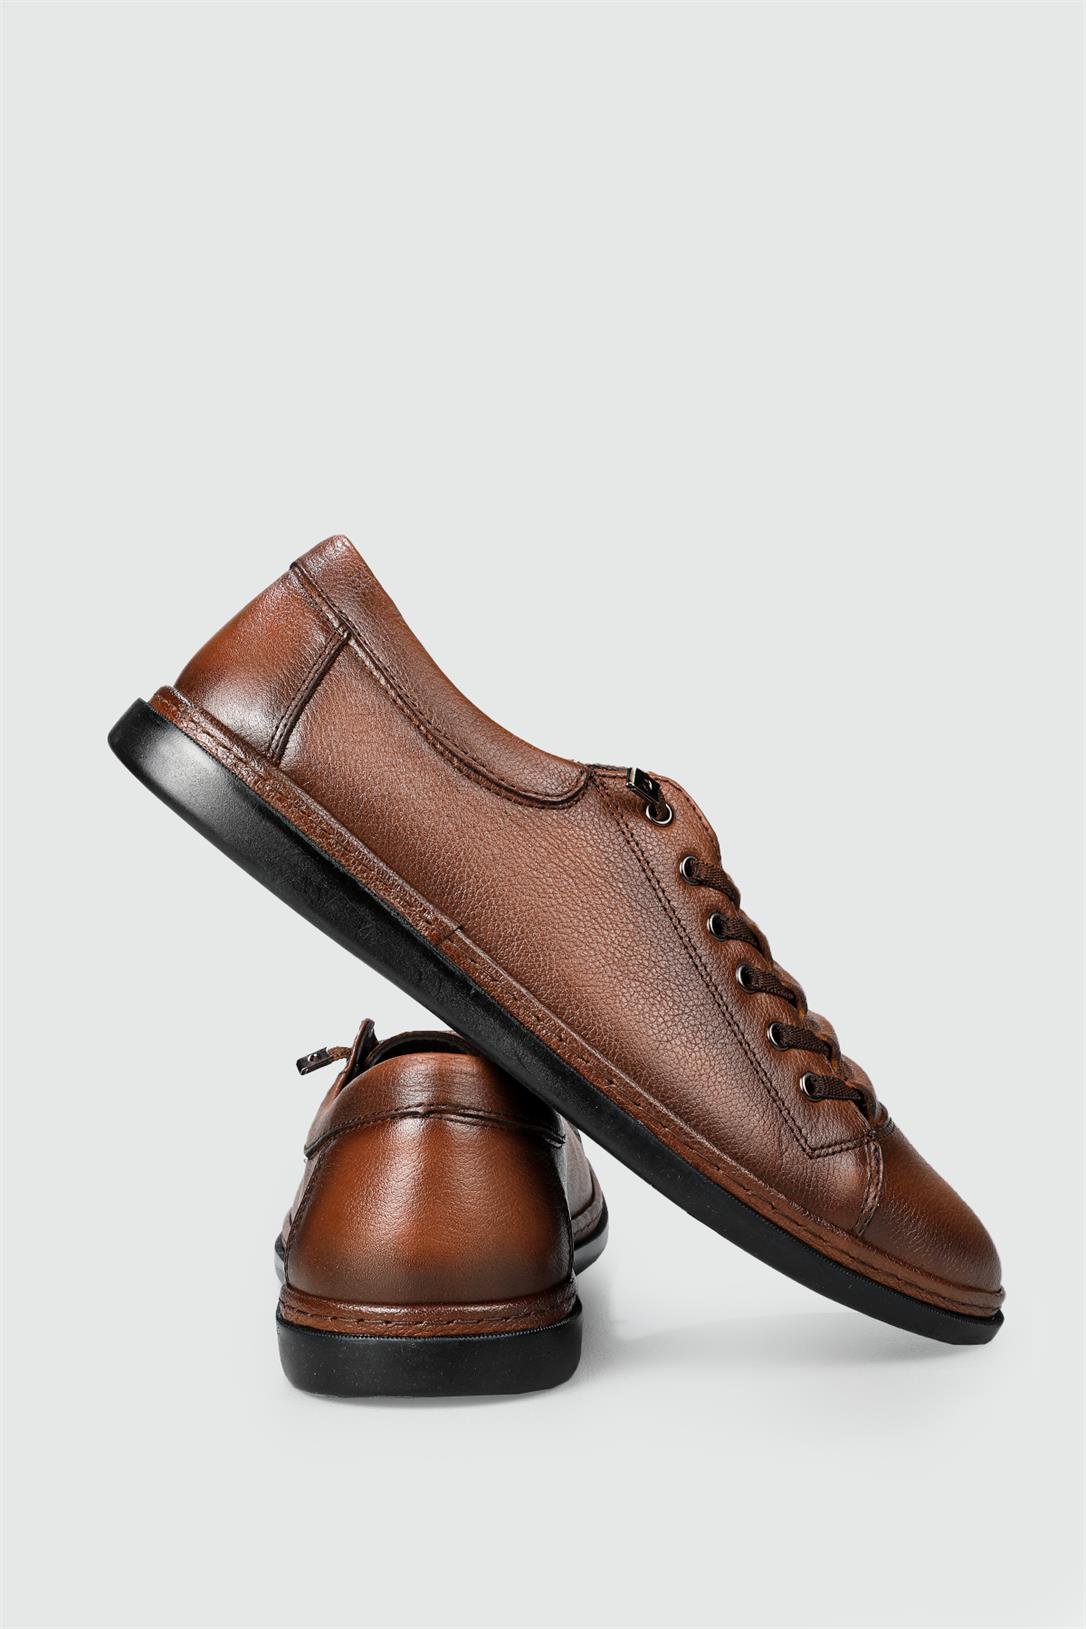 Secure Deri Rahat Comfort Taba Erkek Ayakkabı 2014-2 | Ayakkabı City